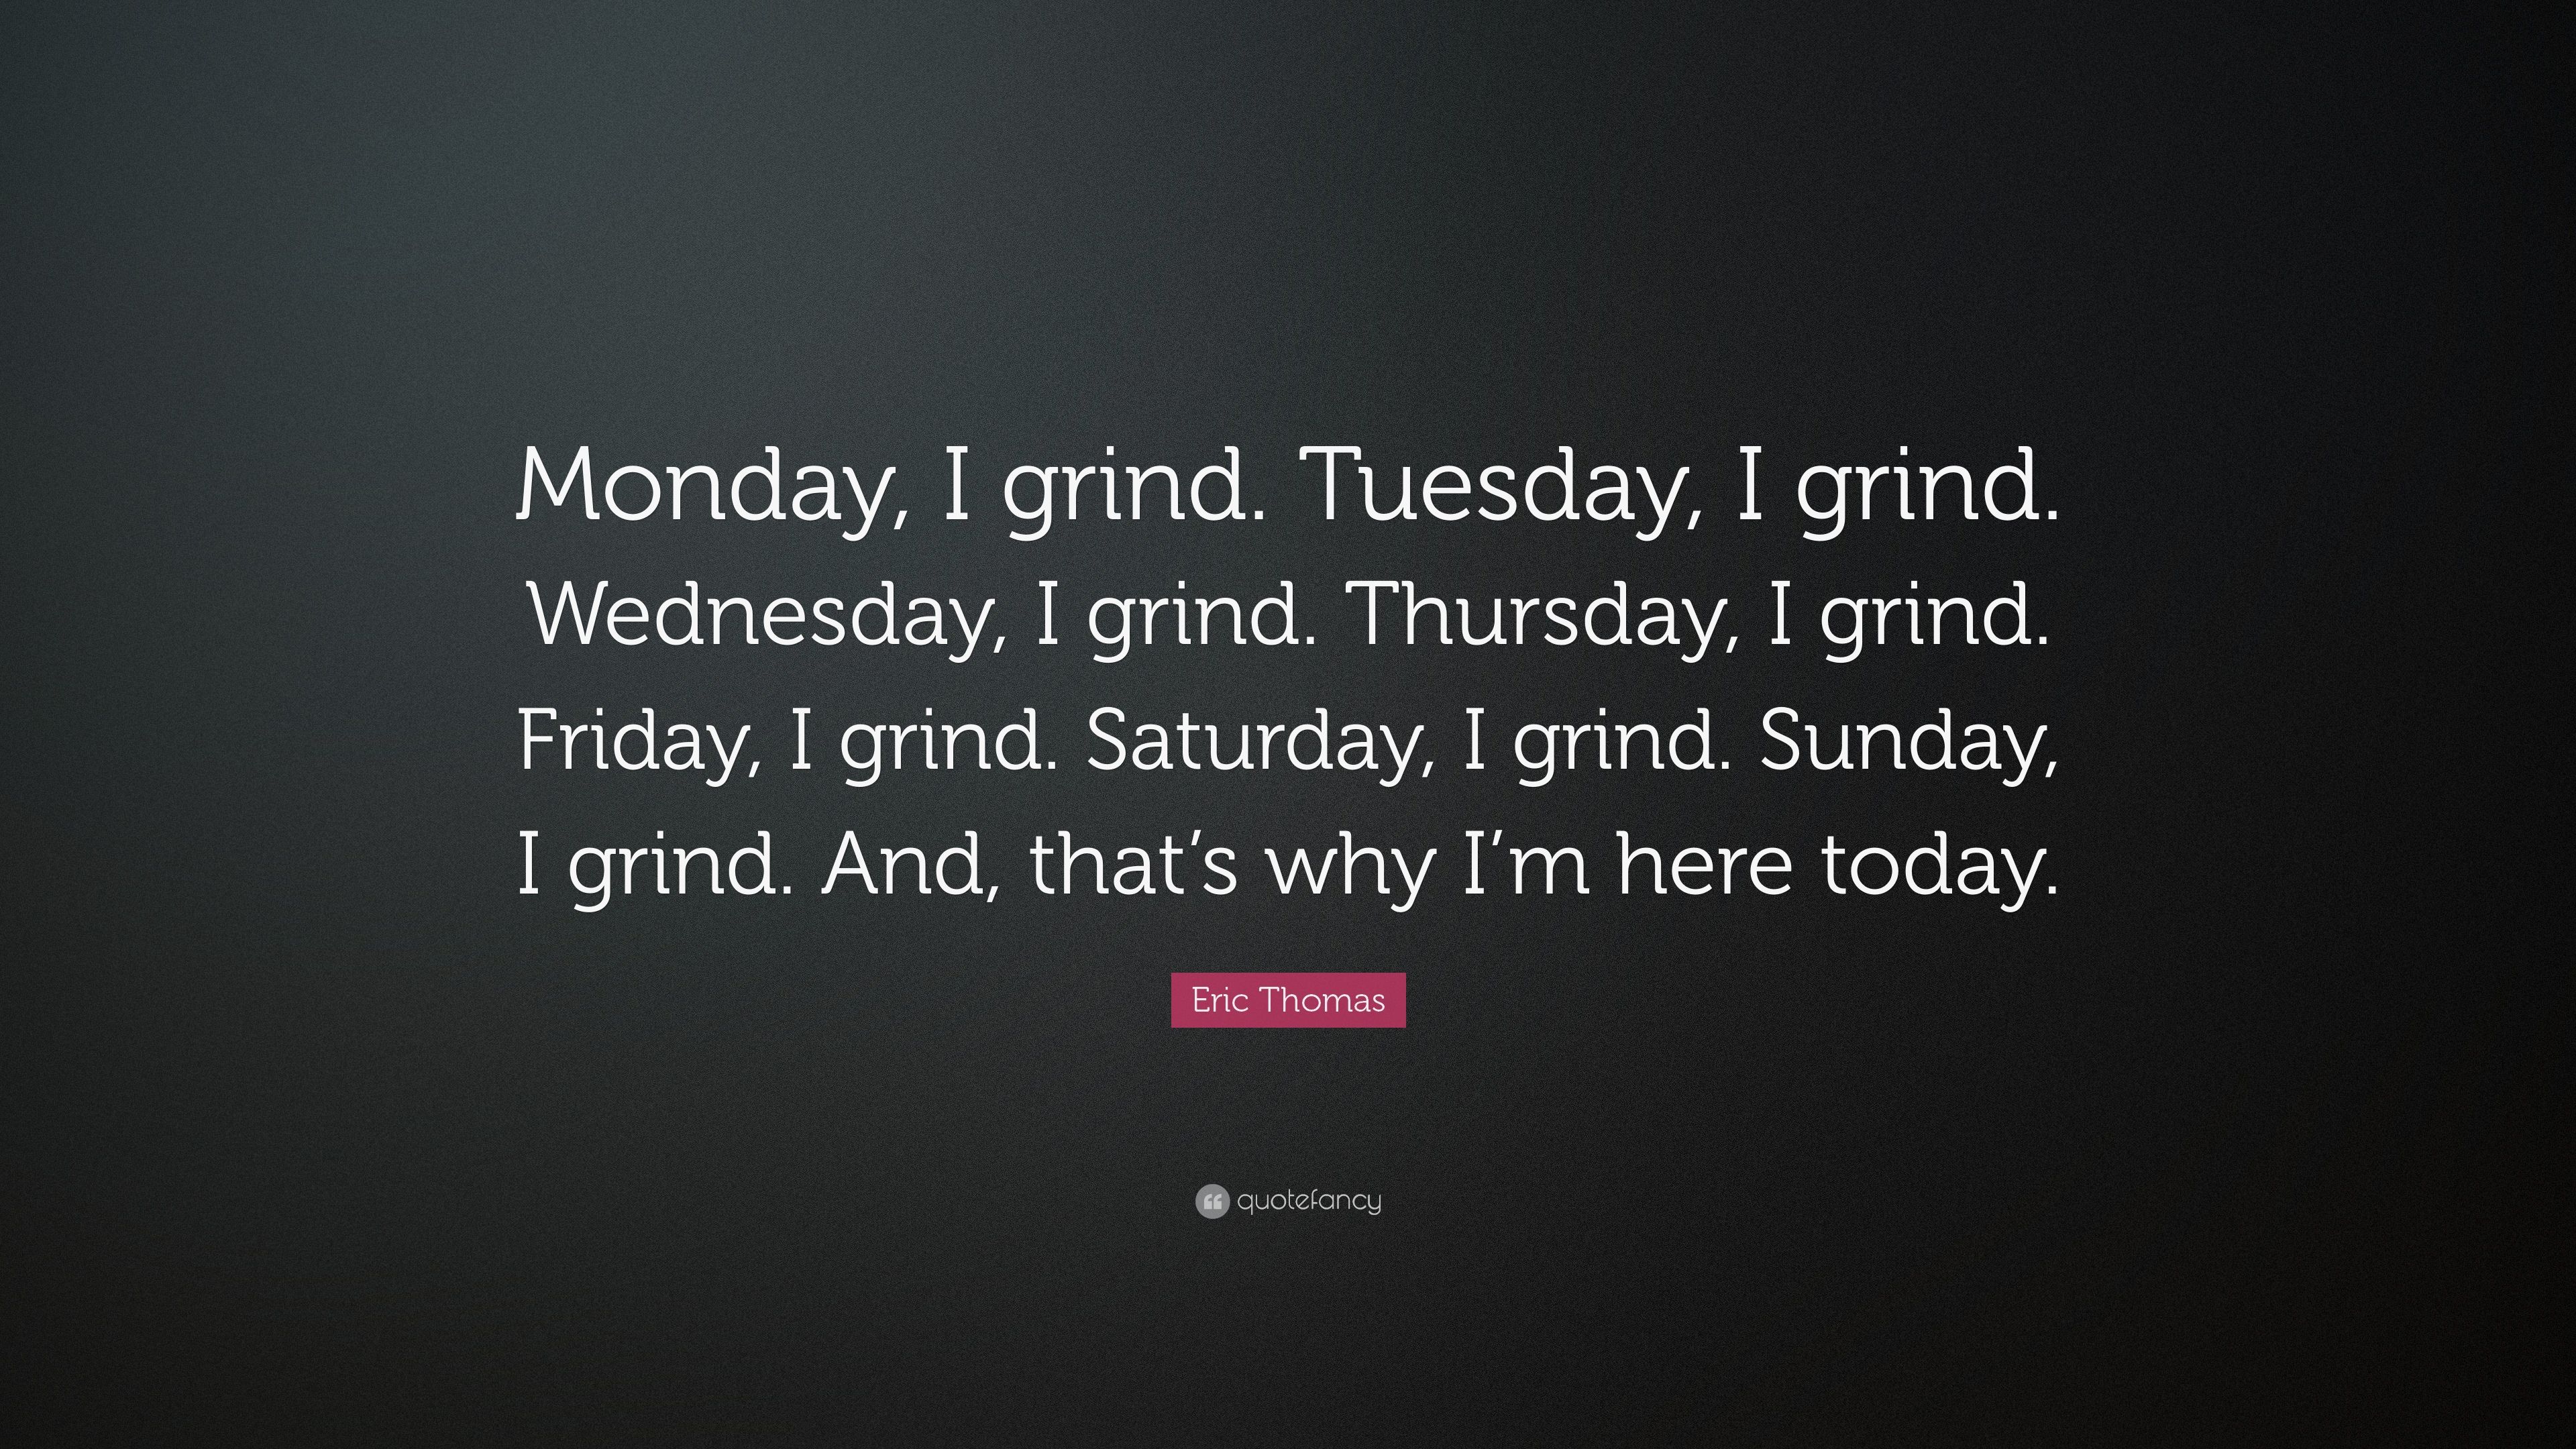 Eric Thomas Quote: “Monday, I grind. Tuesday, I grind. Wednesday, I